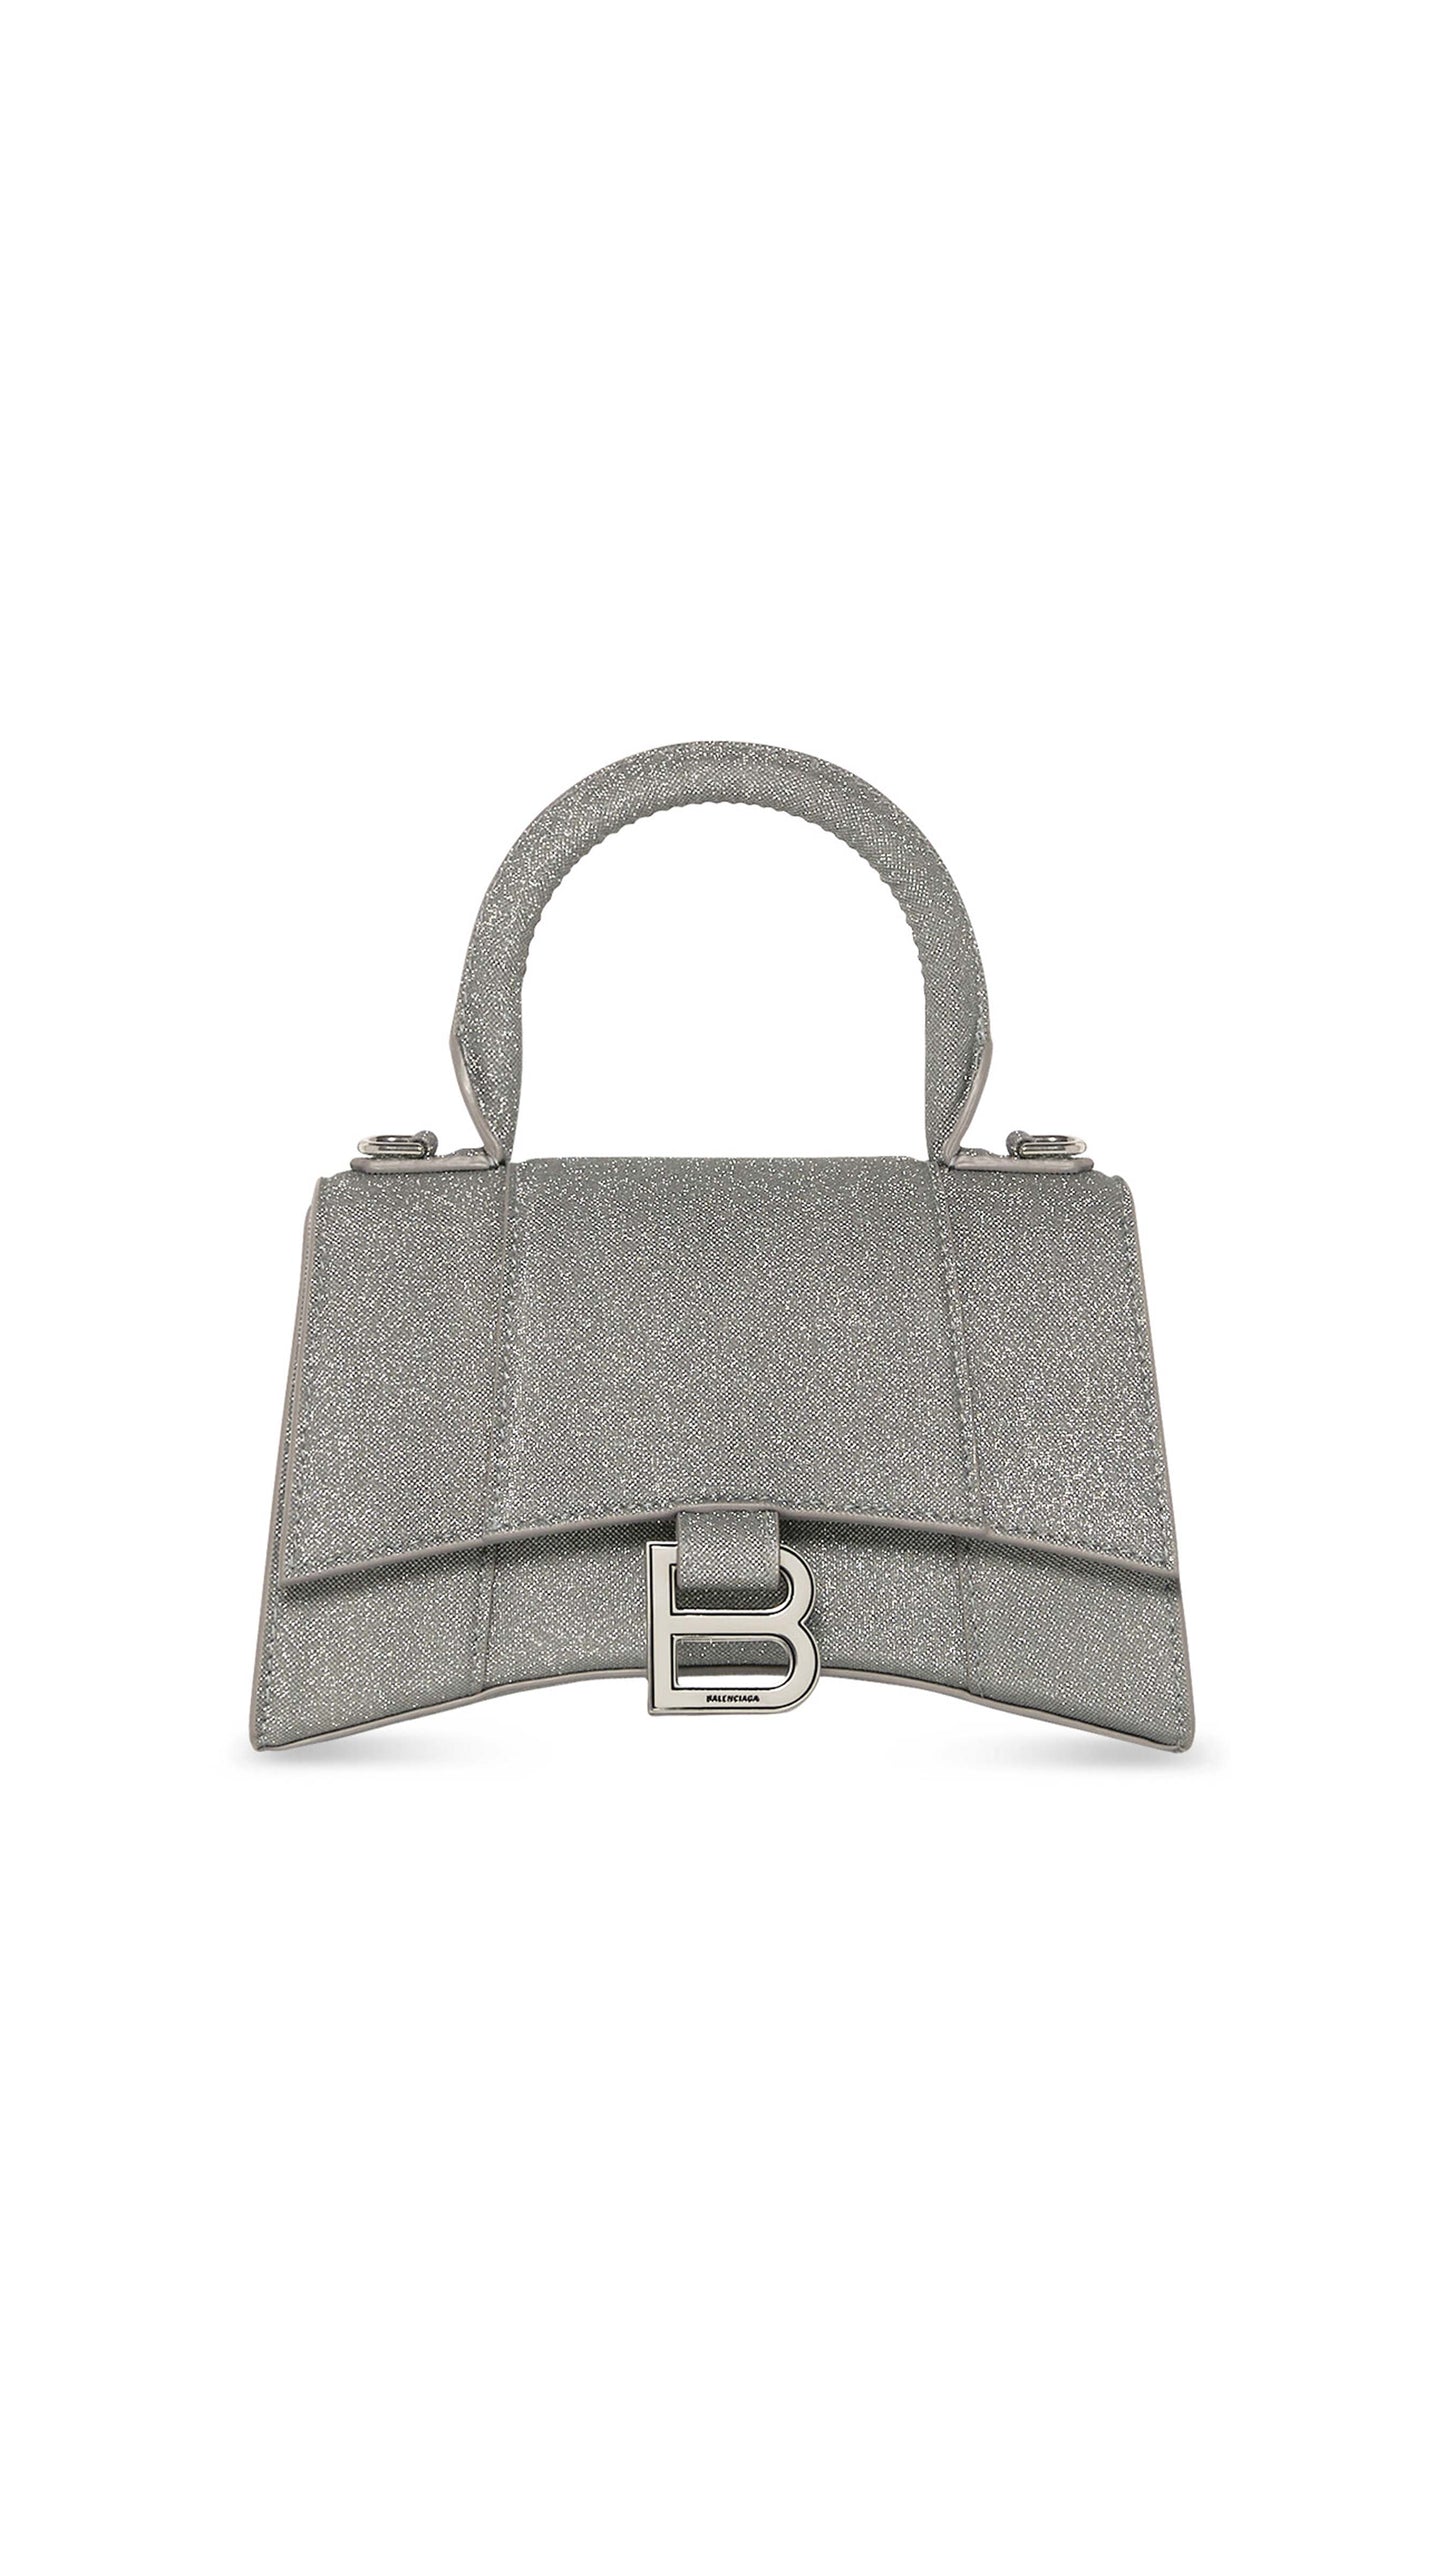 Hourglass XS Handbag - Grey Glitter